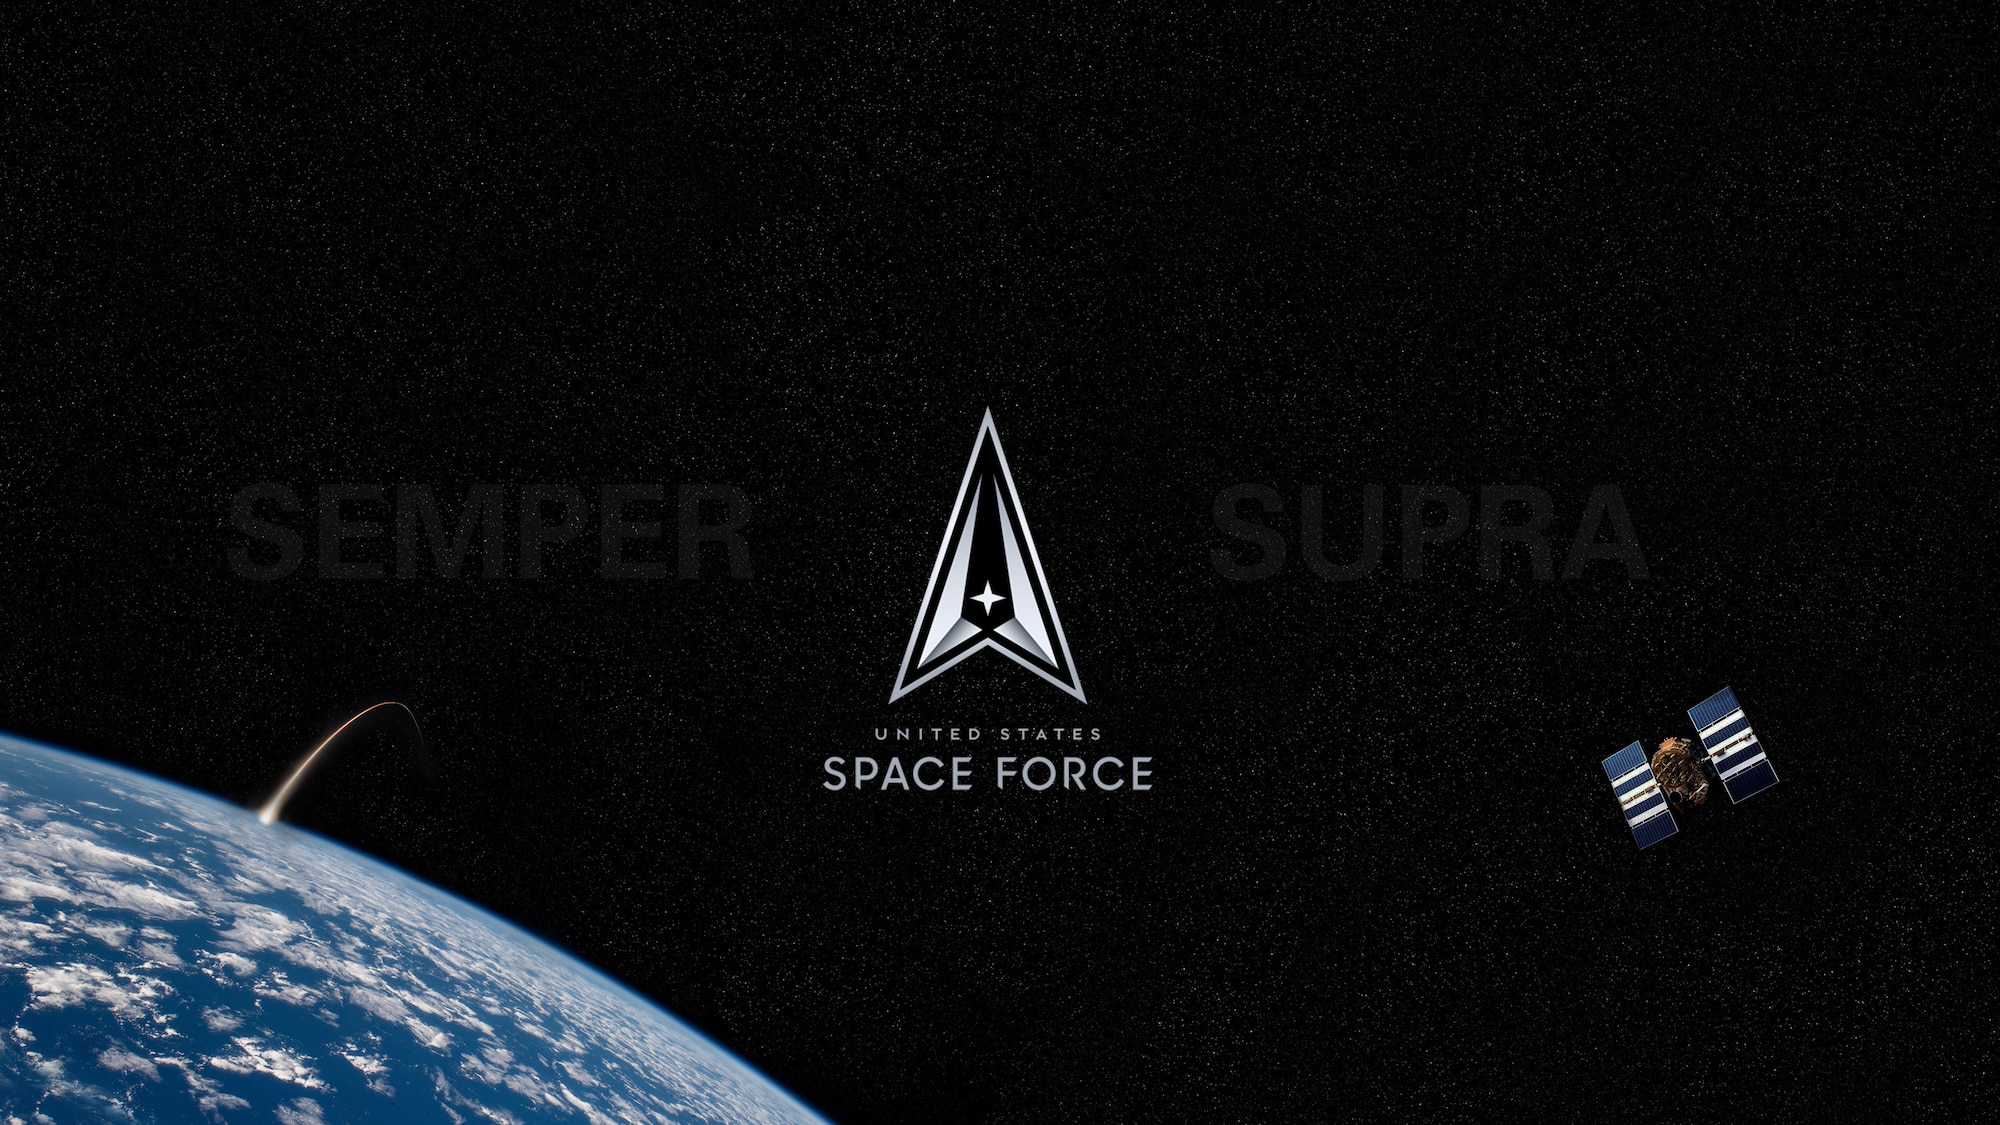 www.spaceforce.mil